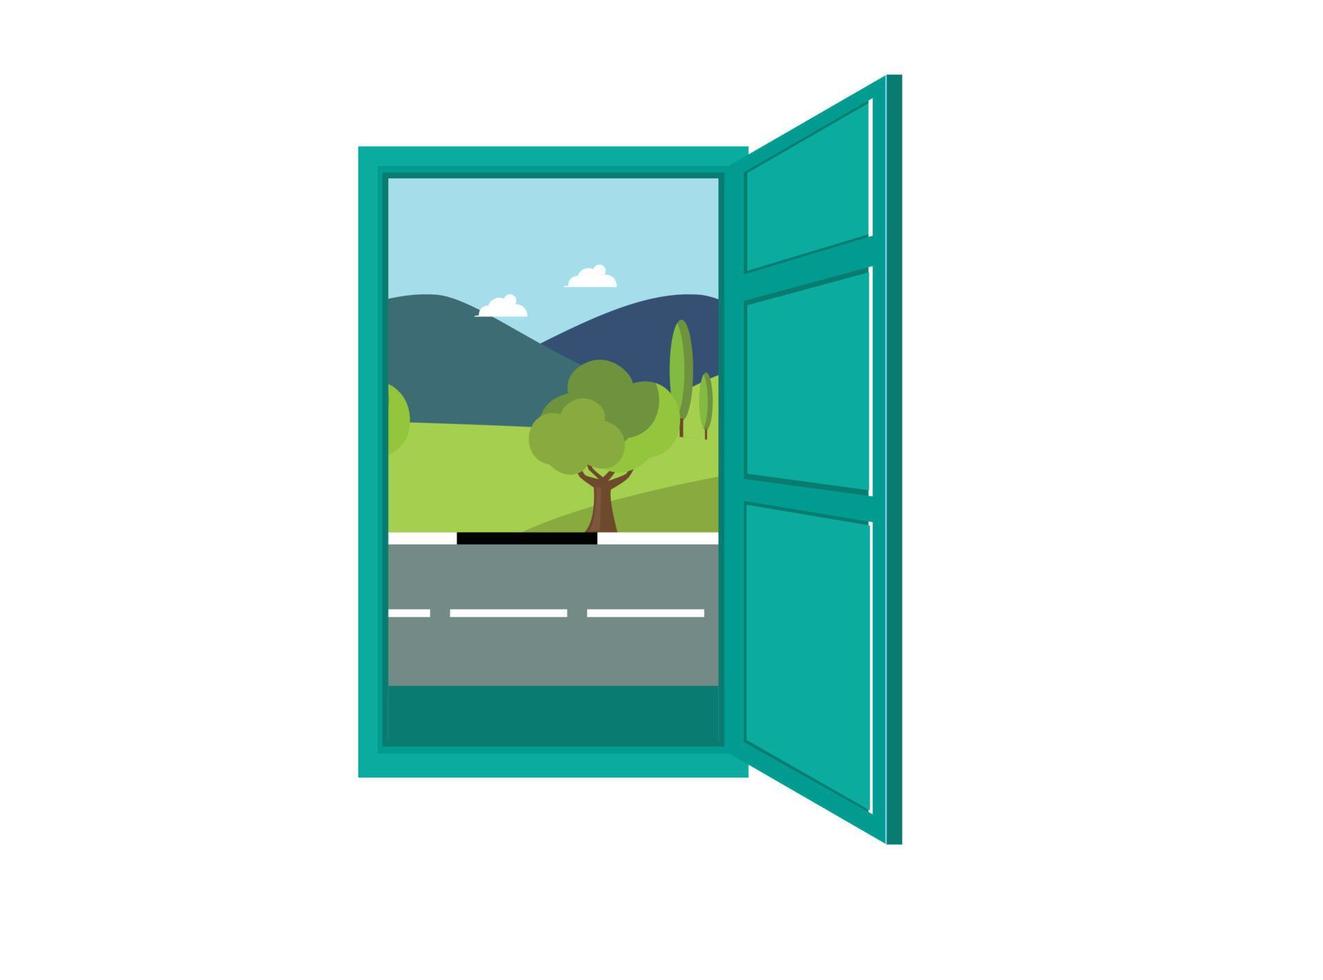 ilustración plana de una hermosa vista al abrir puertas y ventanas. ilustración adecuada para diagramas, infografías y otros recursos gráficos vector